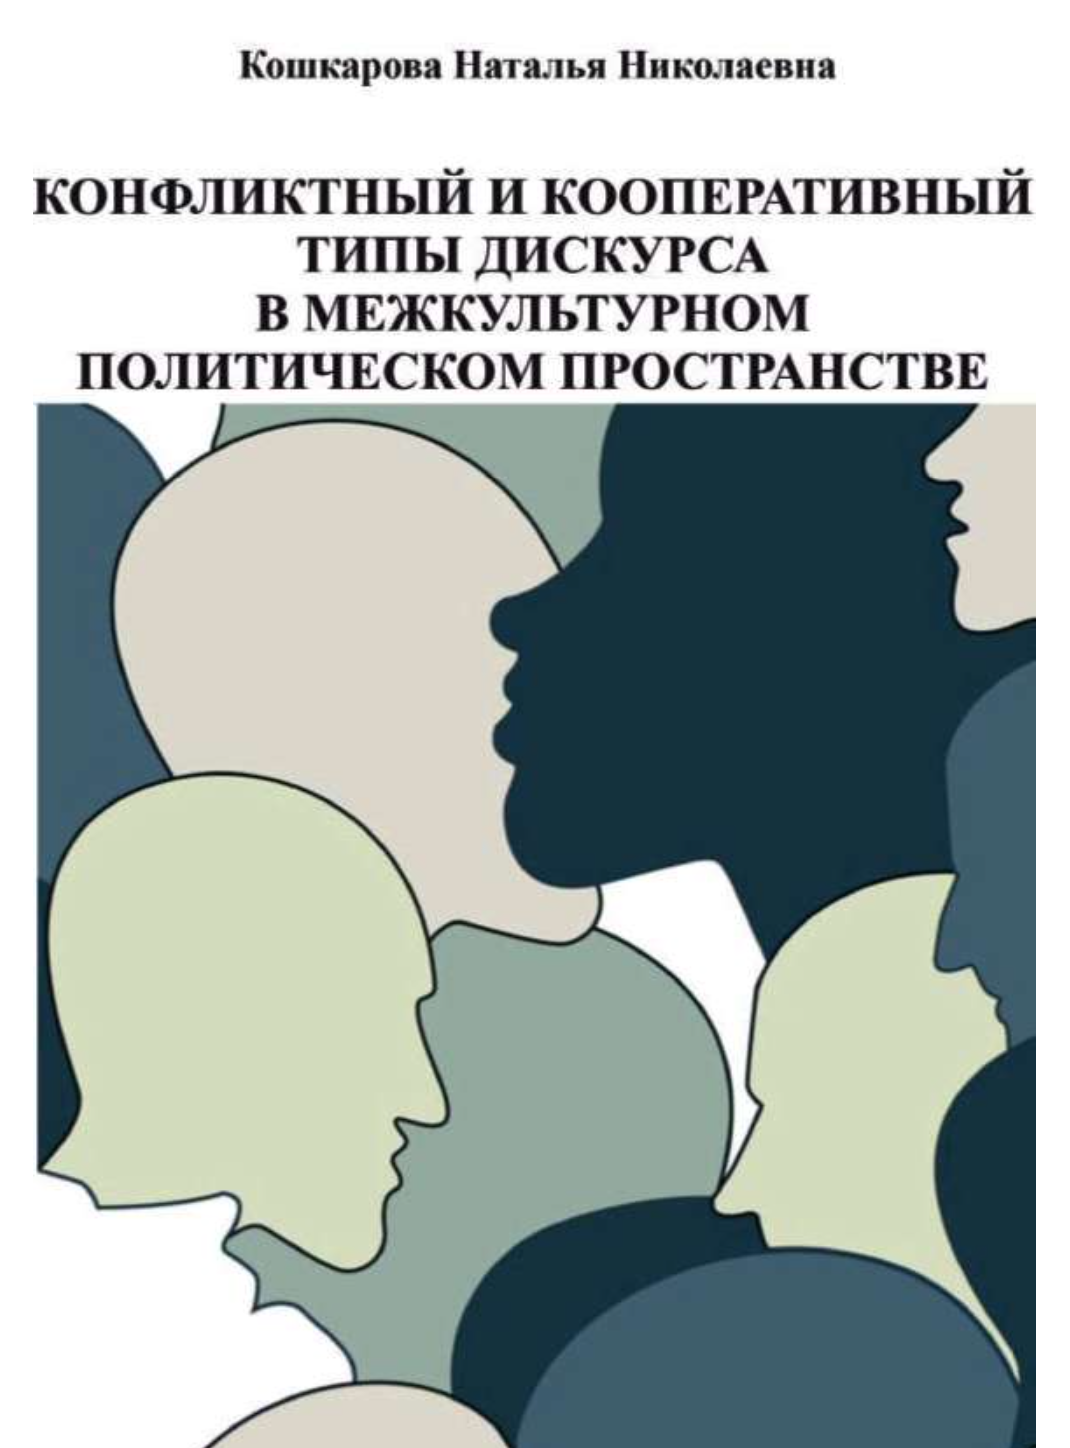 Кошкарова Н.Н. (2021). Конфликтный и кооперативный типы дискурса в межкультурном политическом пространстве